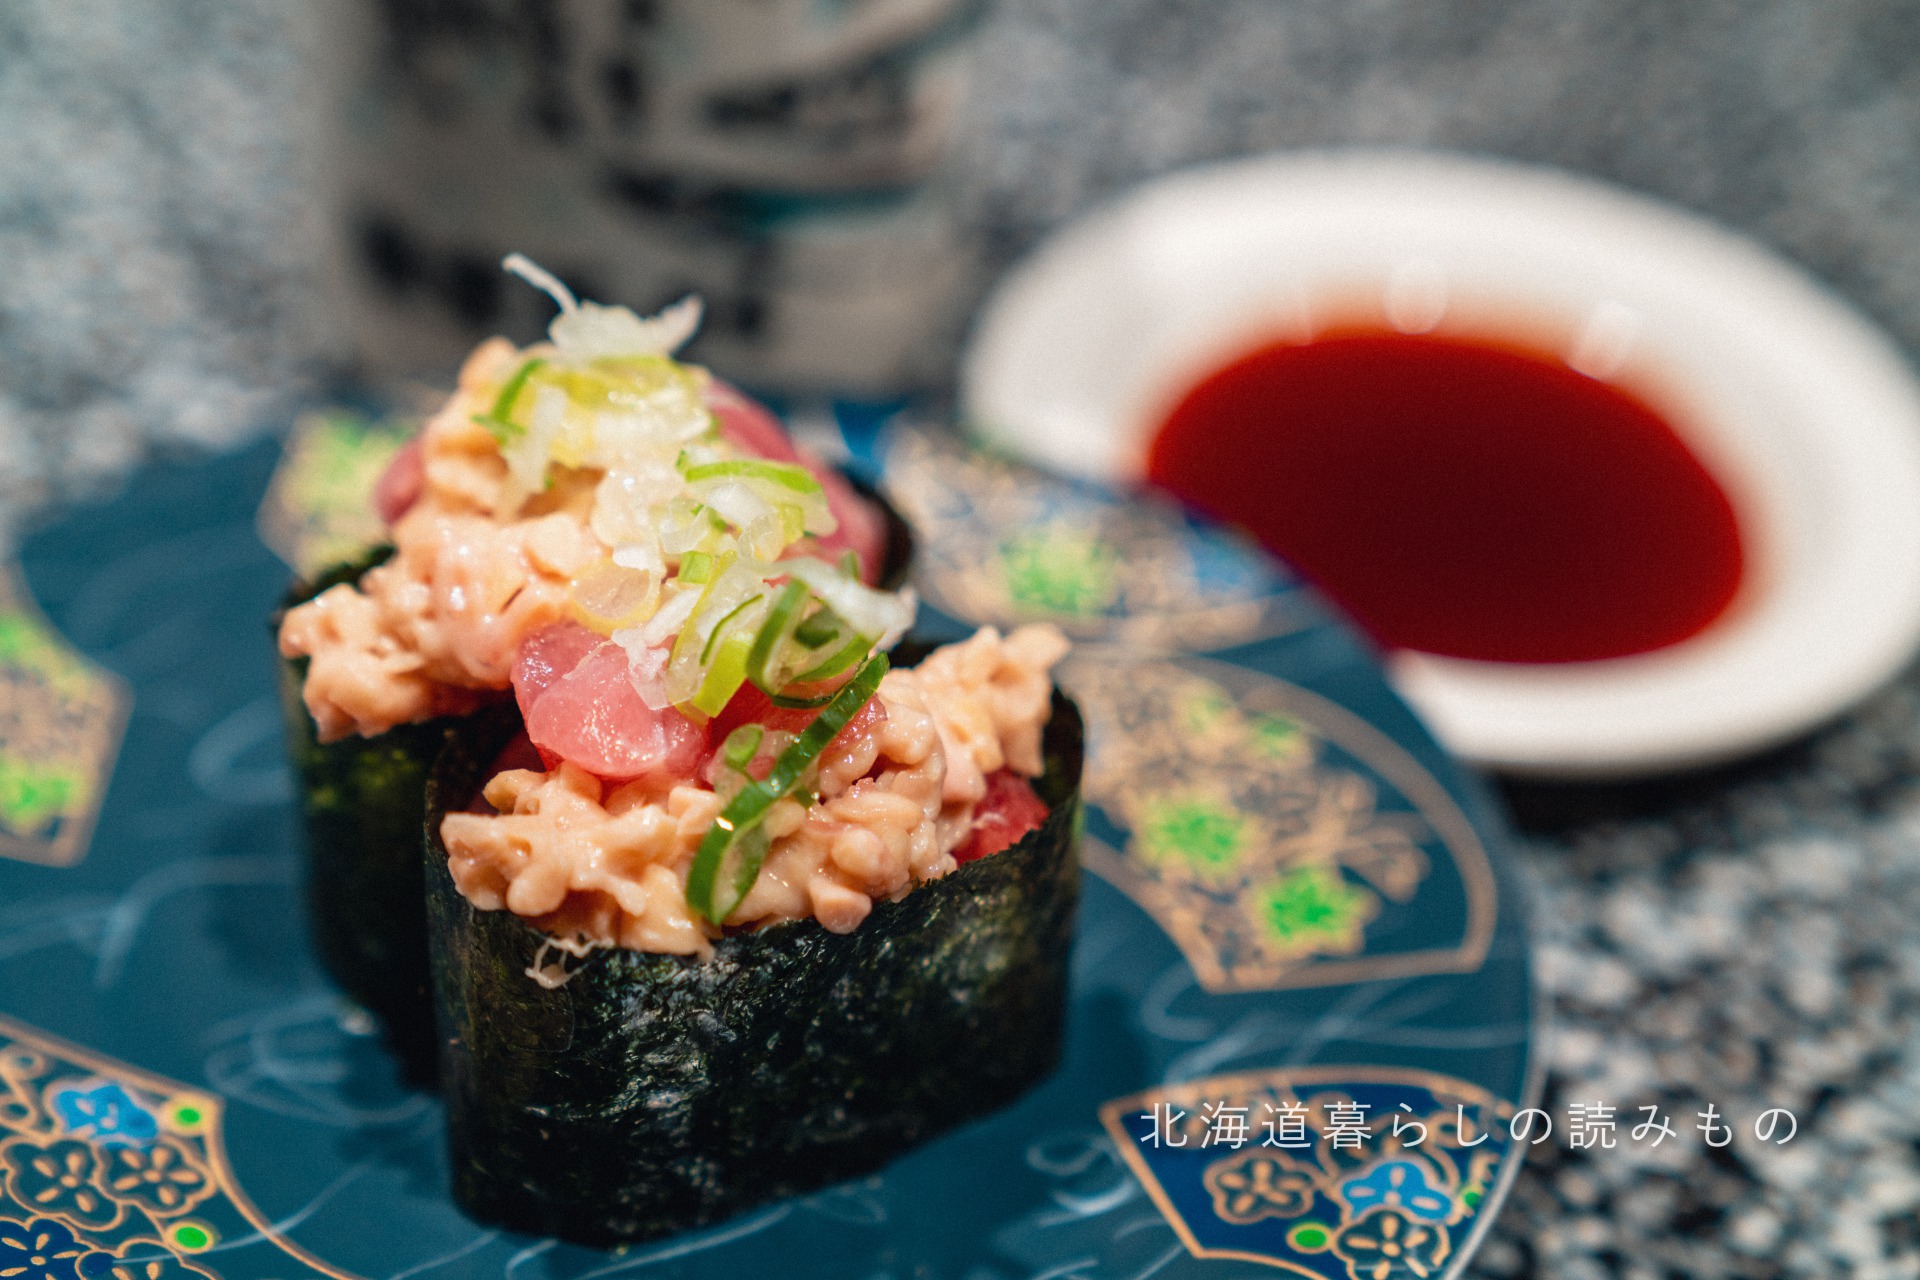 迴轉壽司根室花丸的菜單上的「金槍魚納豆」